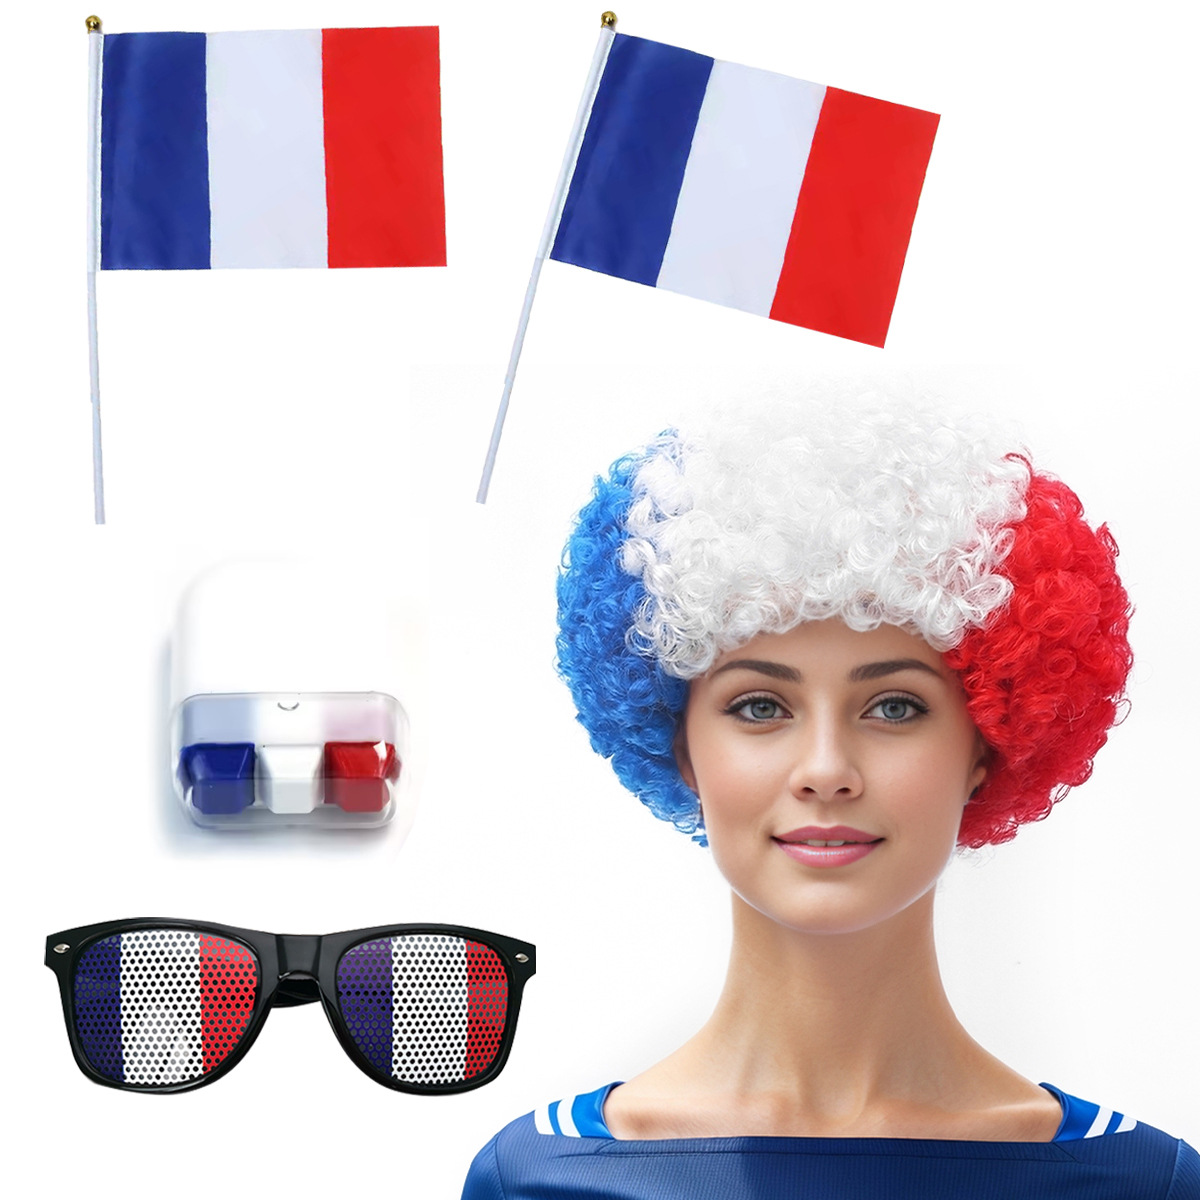 欧洲杯世界法国旗色球迷拉拉队假发配件欧美爆炸头套狂欢节日礼品